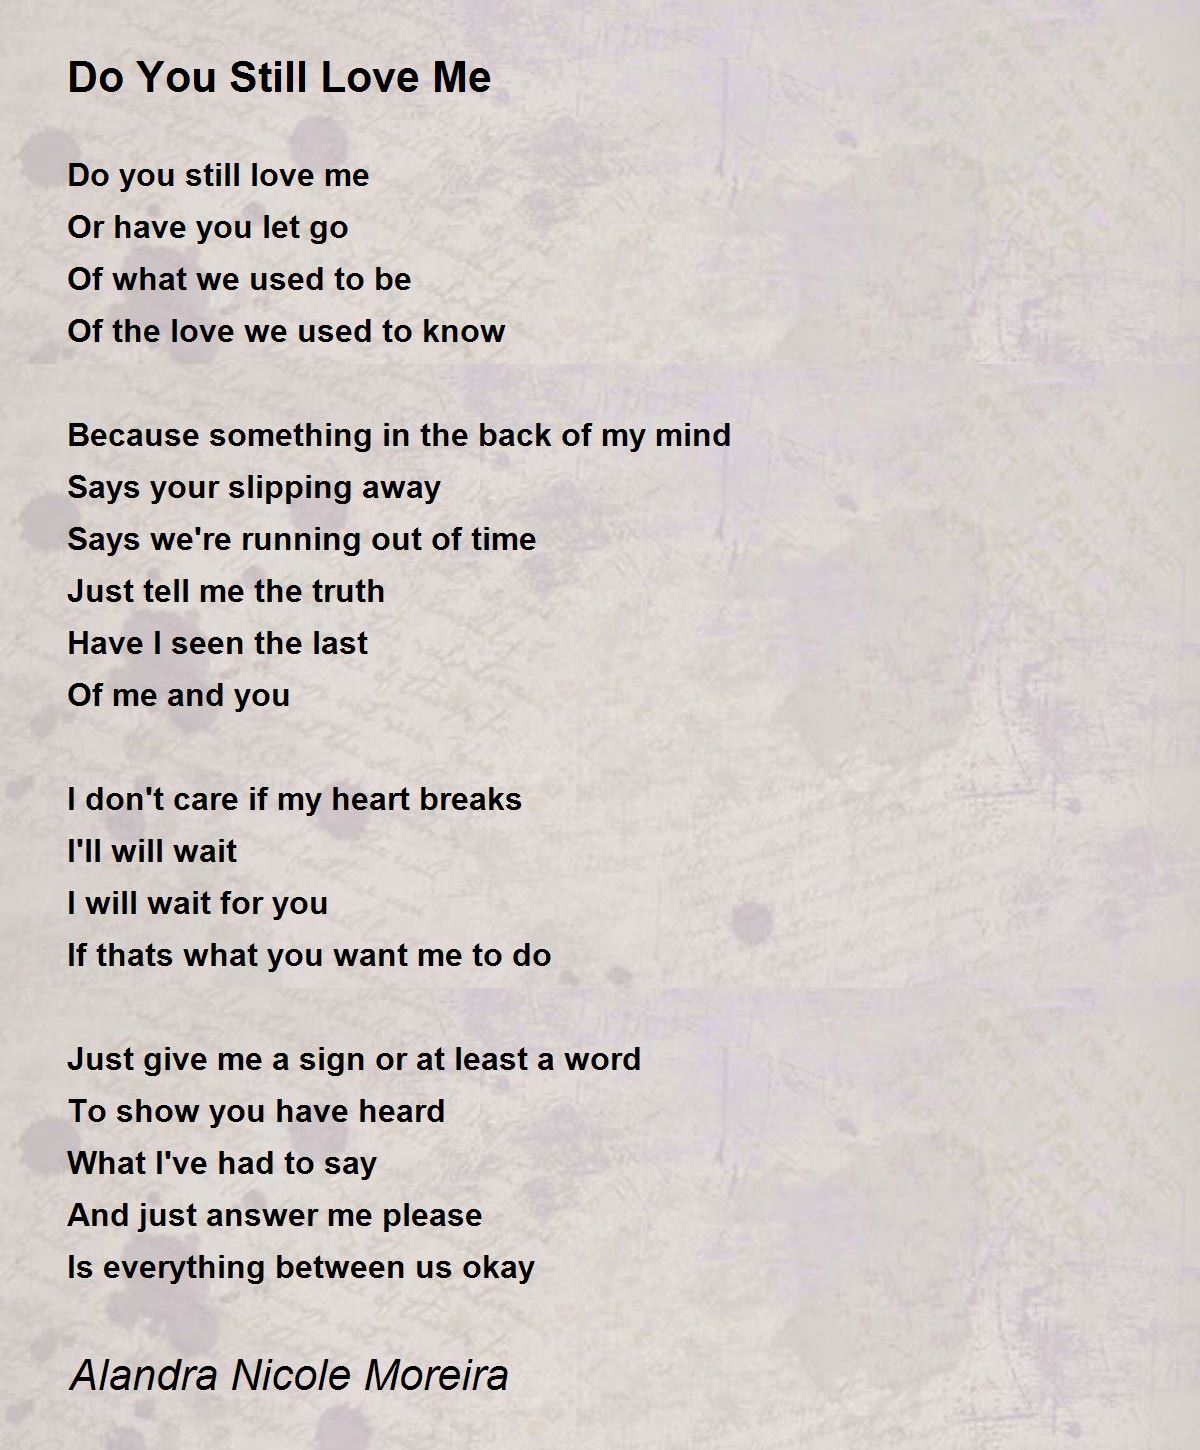 Do You Still Love Me - Do You Still Love Me Poem by Alandra Nicole Moreira